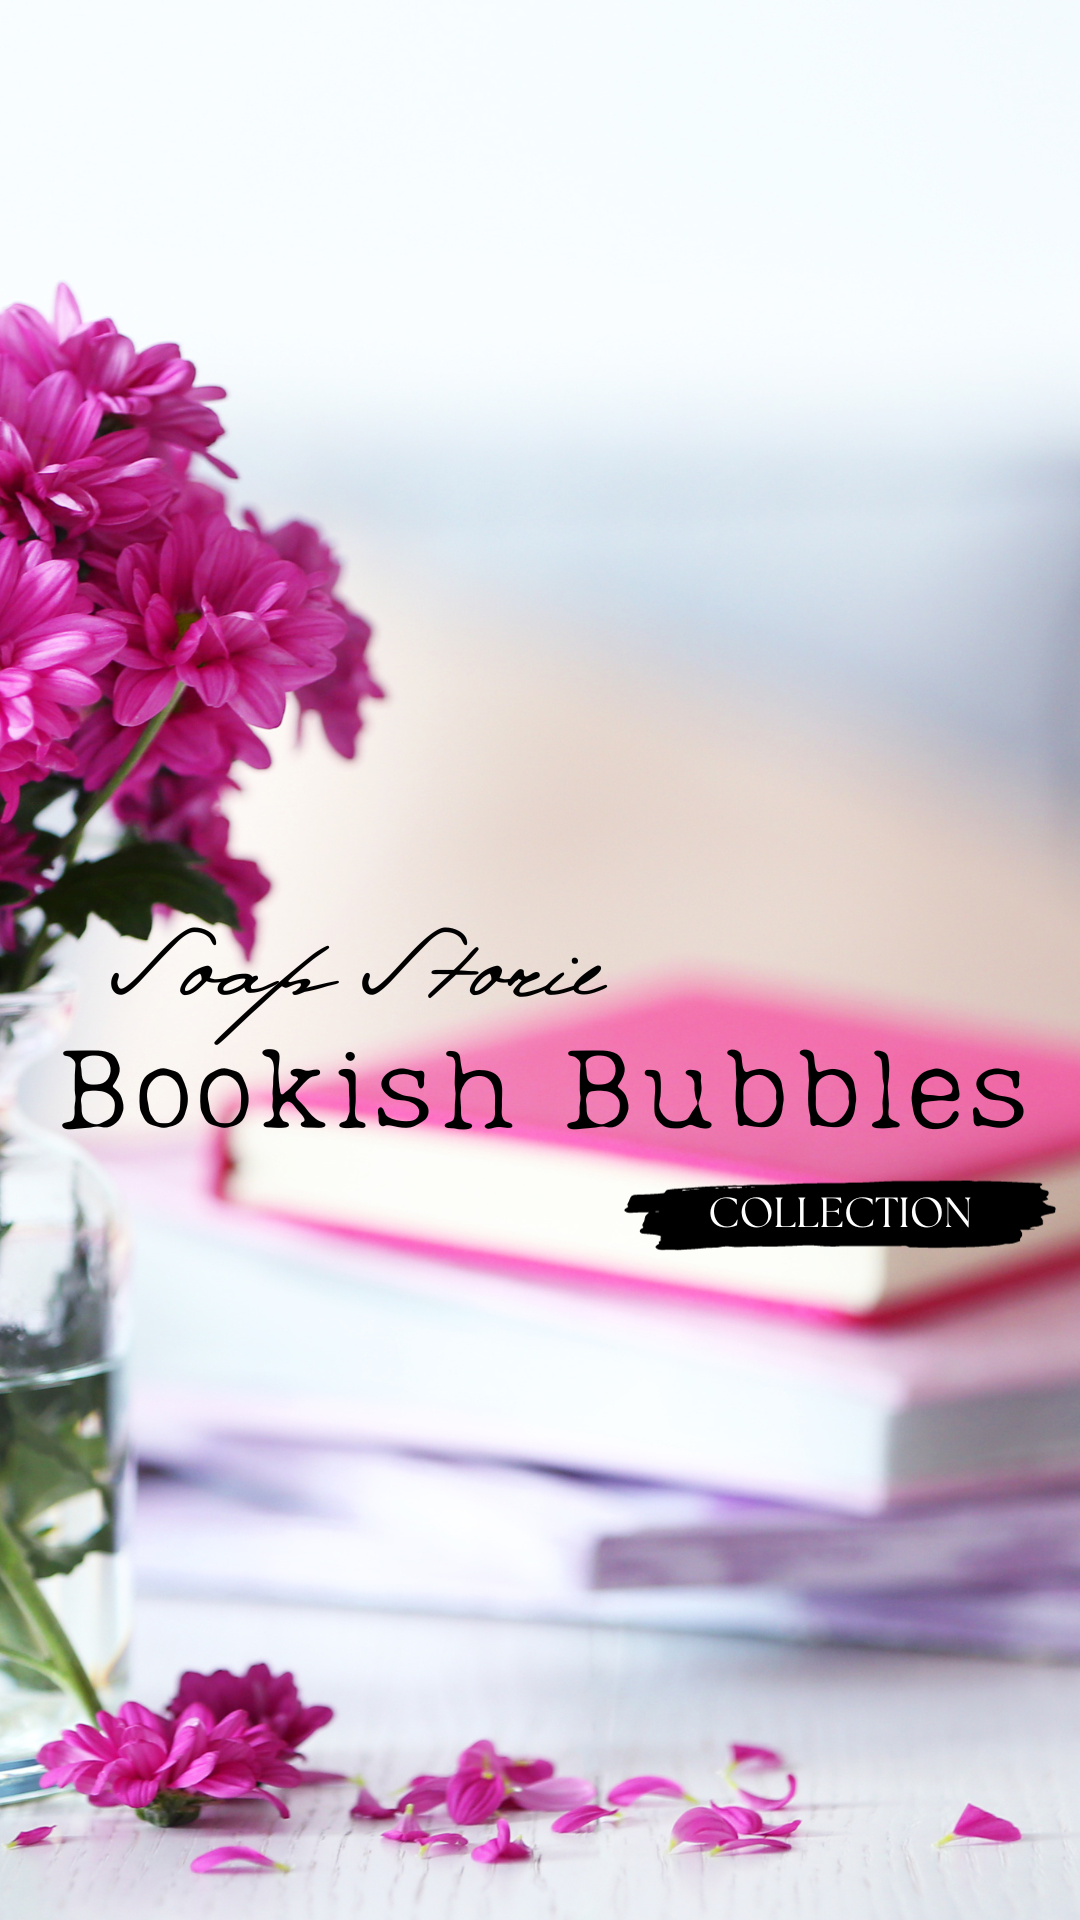 boekenstapel met roze en paarse tonen met aan de voorzijde roze bloemblaadjes en een vaas gevuld met roze bloemen